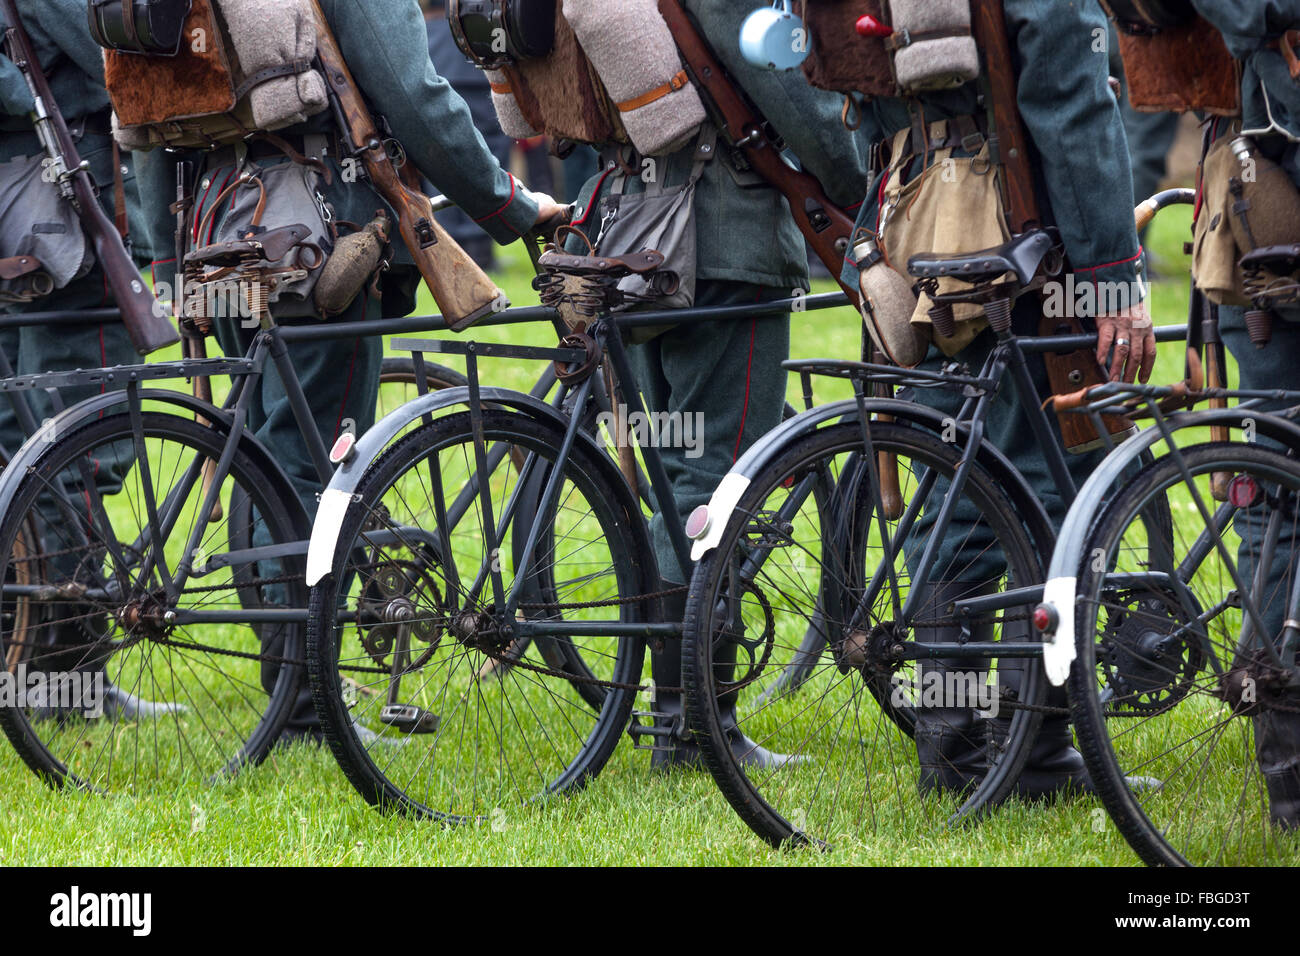 Soldats Prussiens mobile avec leurs bicyclettes, République Tchèque Banque D'Images